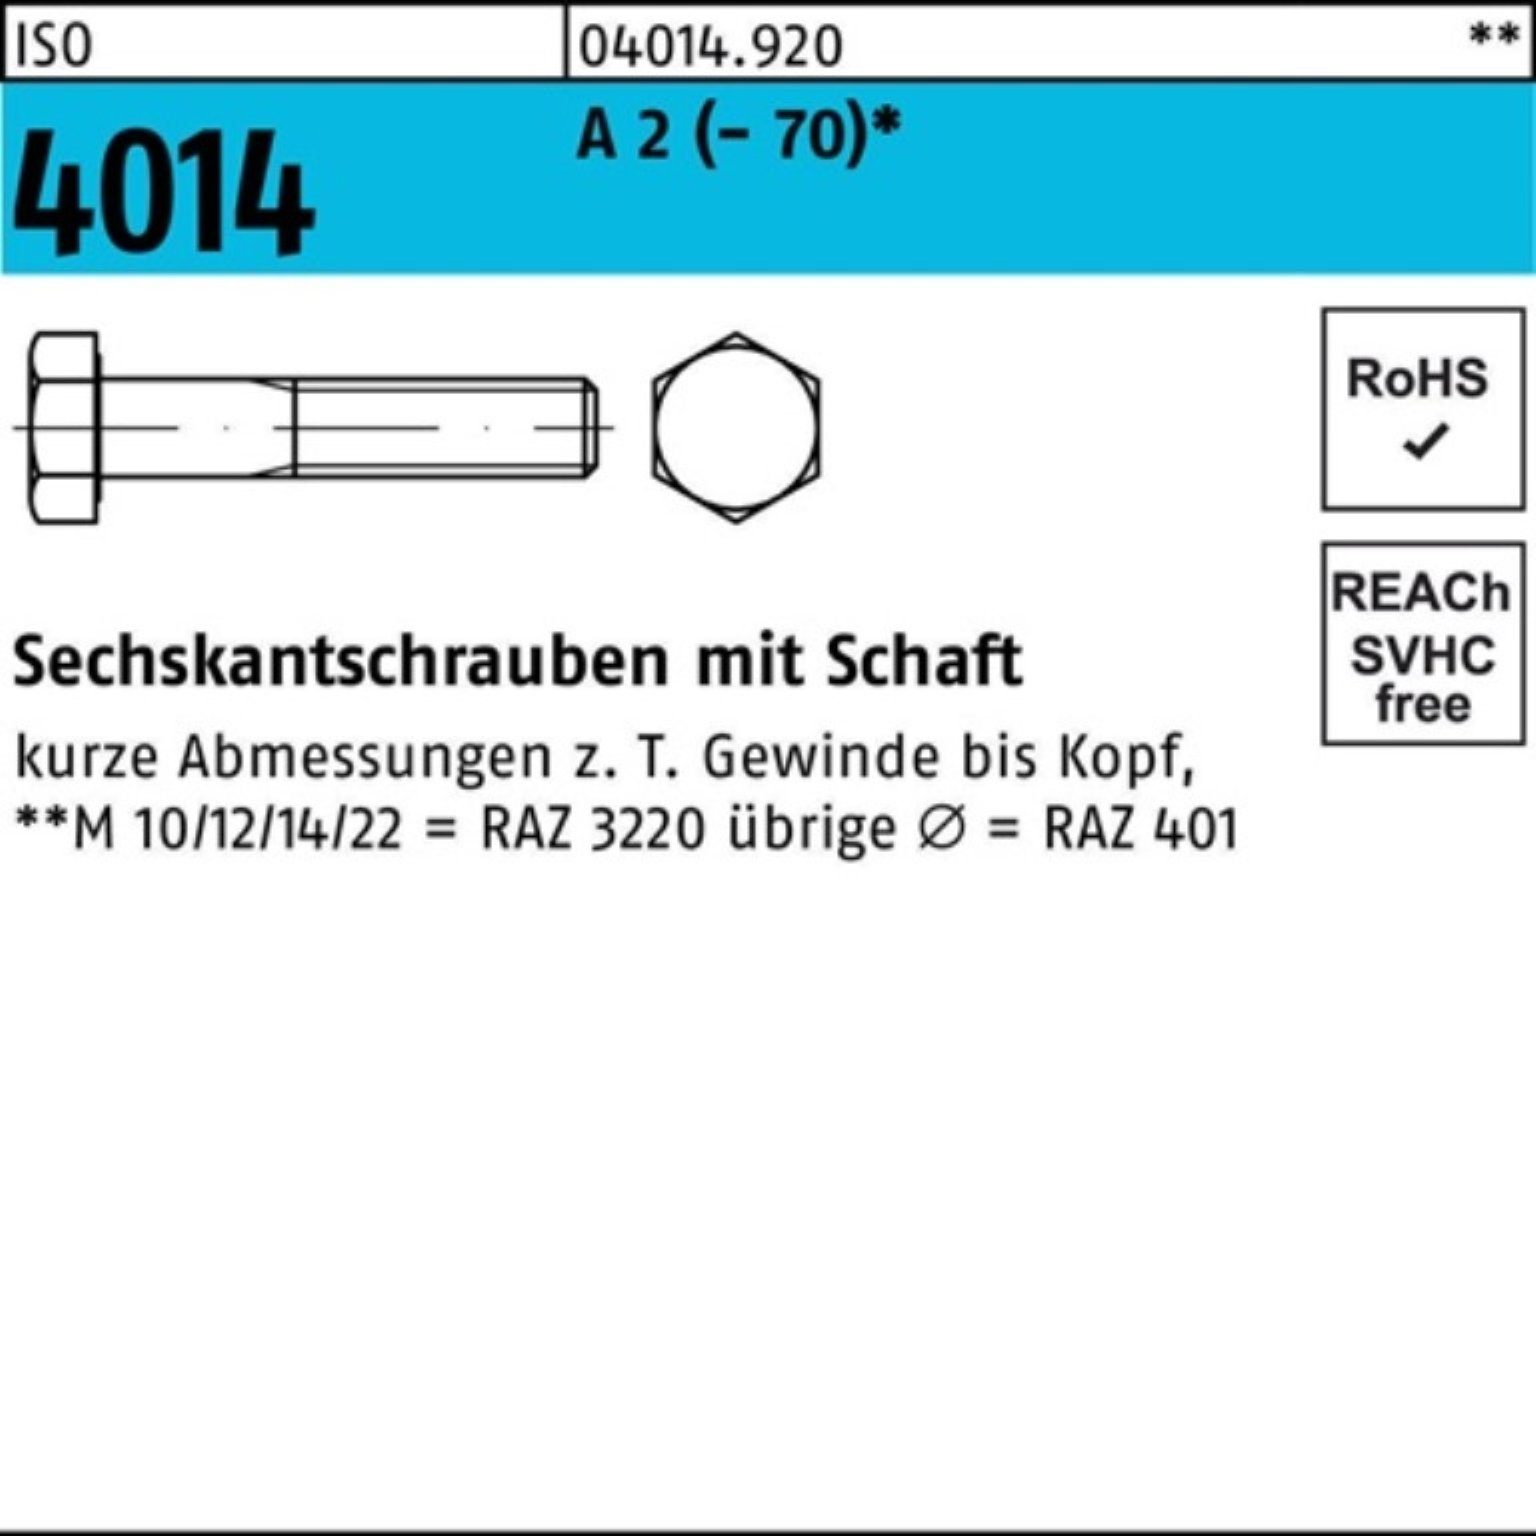 M33x Schaft 4014 Sechskantschraube A ISO Bufab 1 ISO 2 Pack Stück Sechskantschraube 100er 200